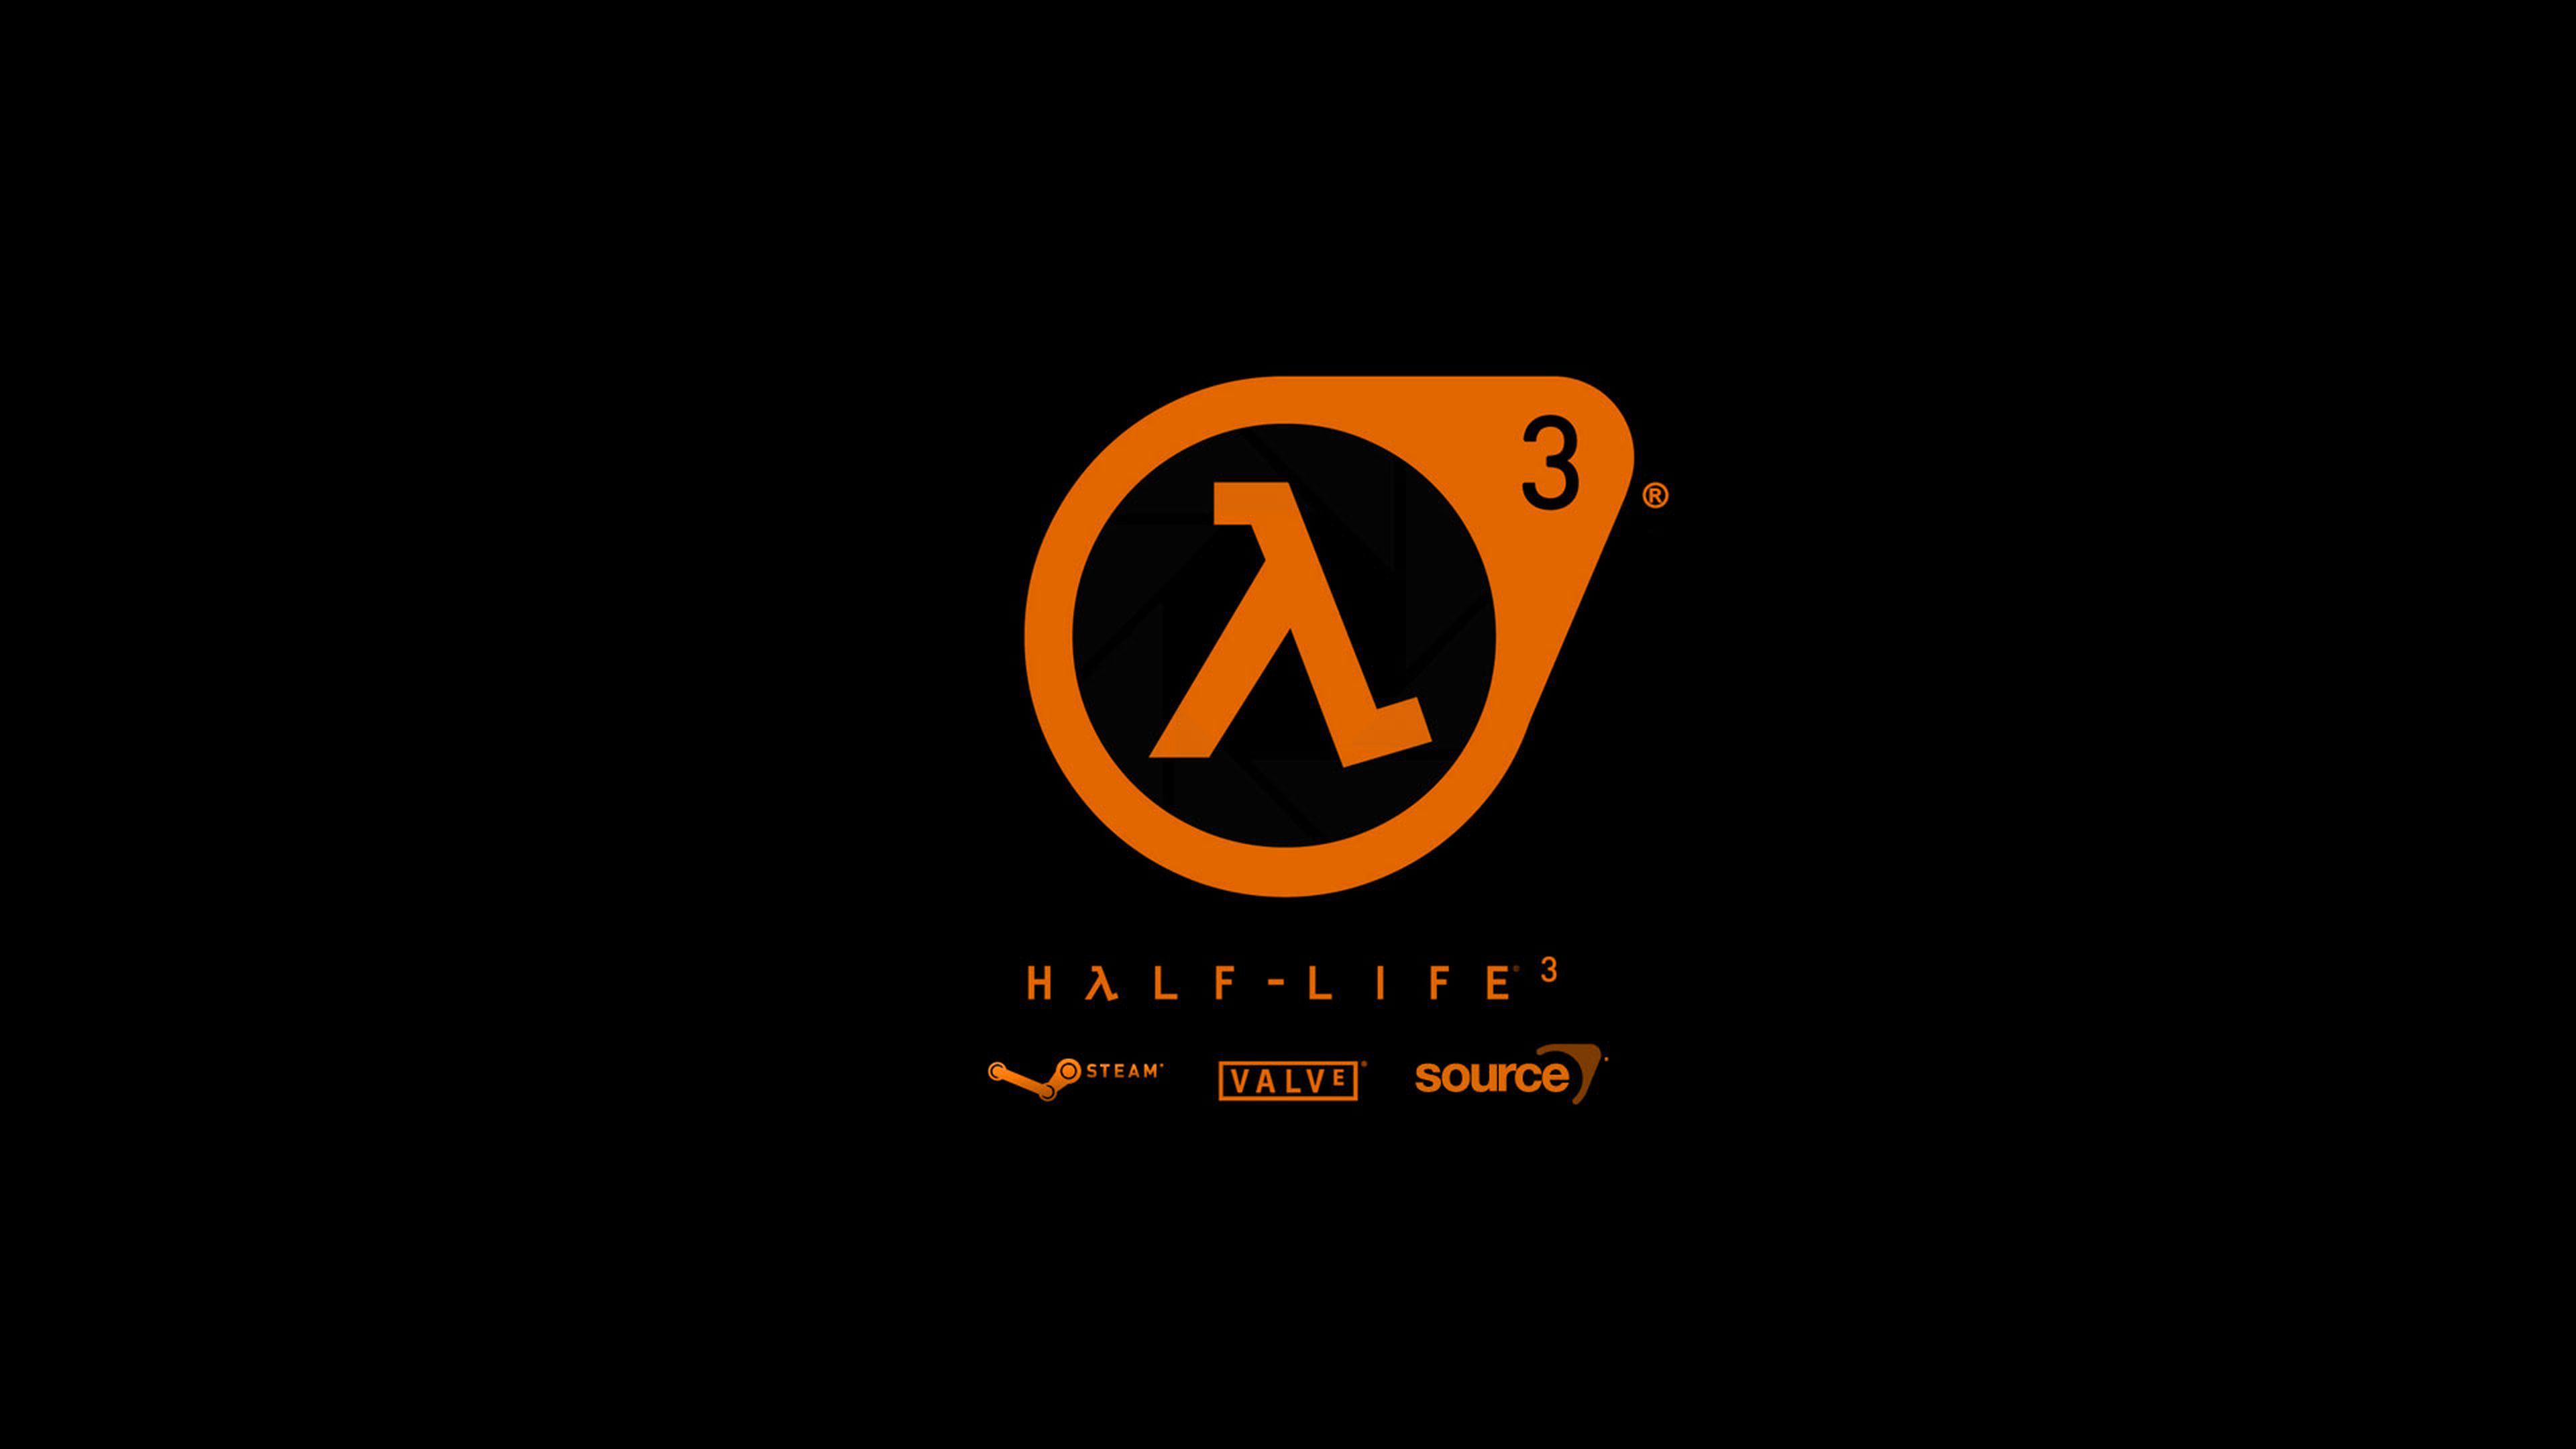 PS4 por 20 euros al mes, Half-Life 3... Las noticias de la semana: 25/05/14